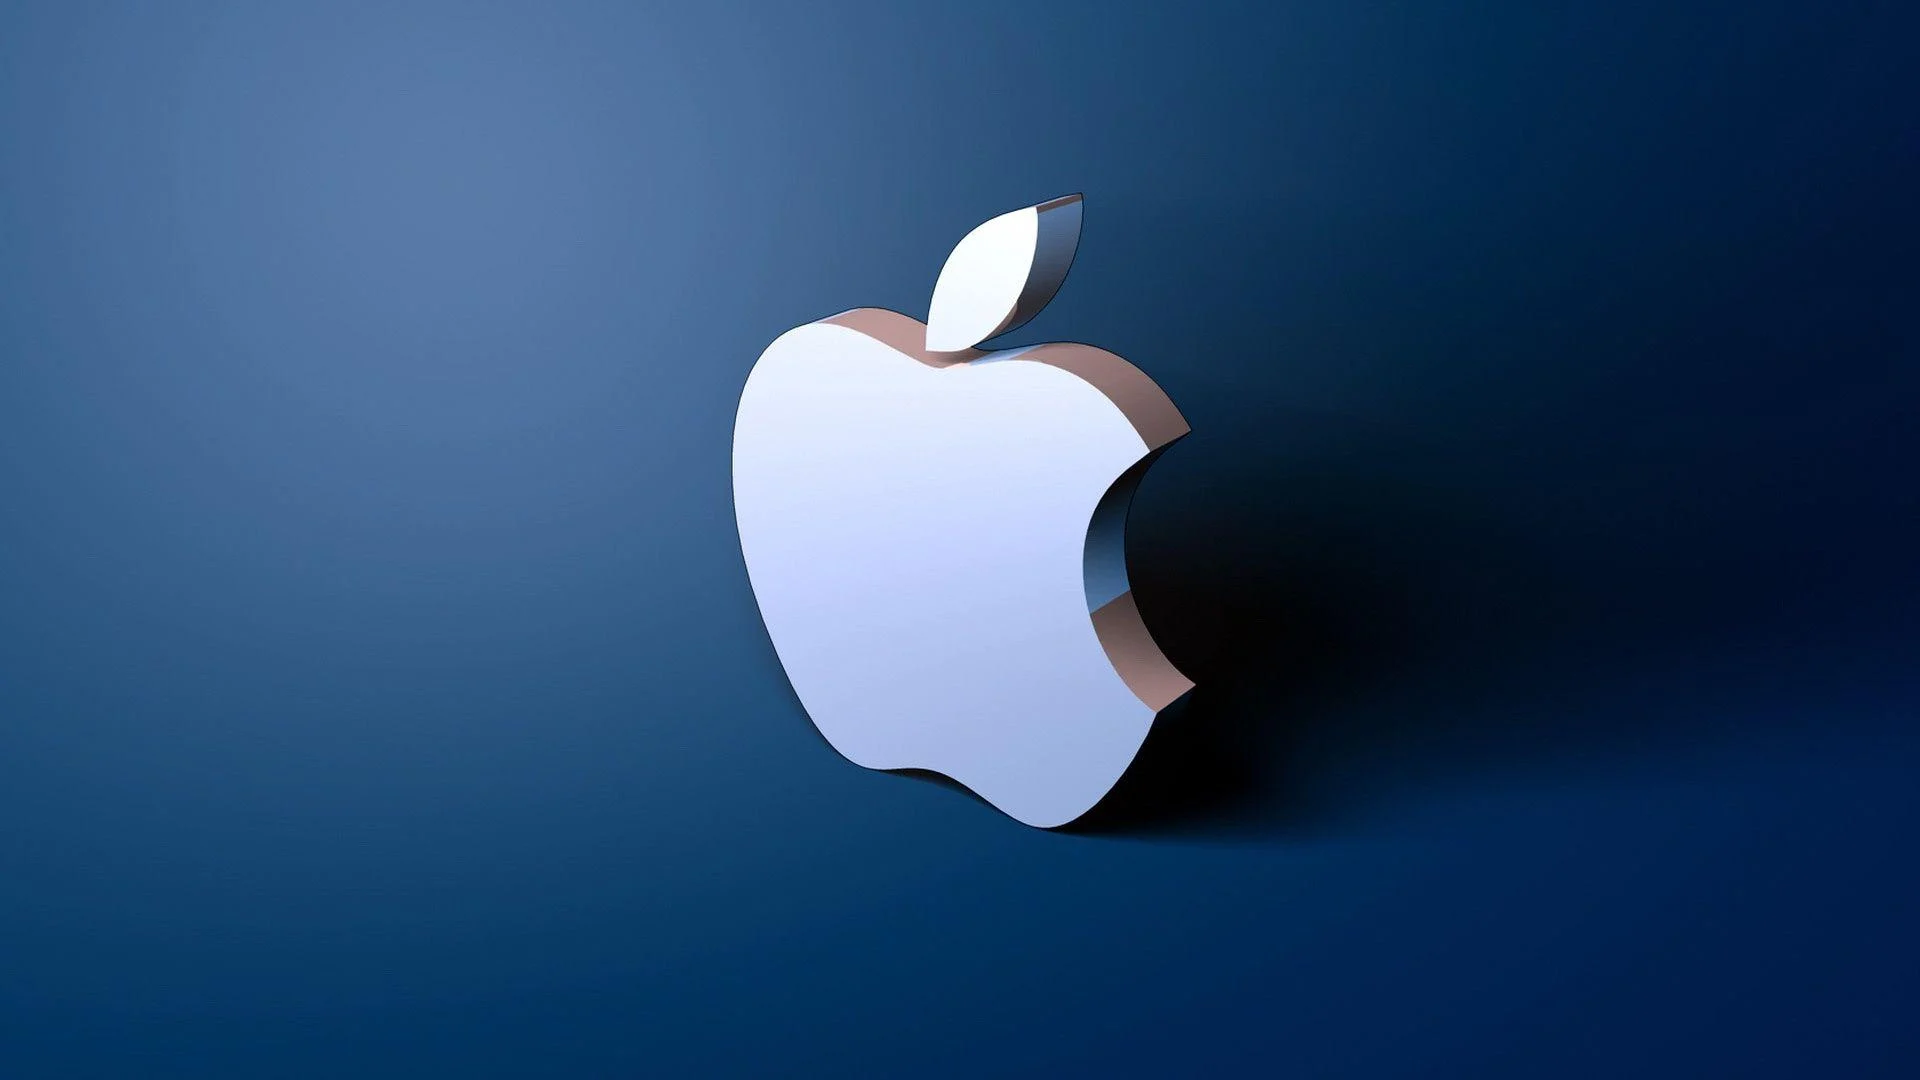 蘋果正在将更多注意力轉向 6G 技術(shù)研發